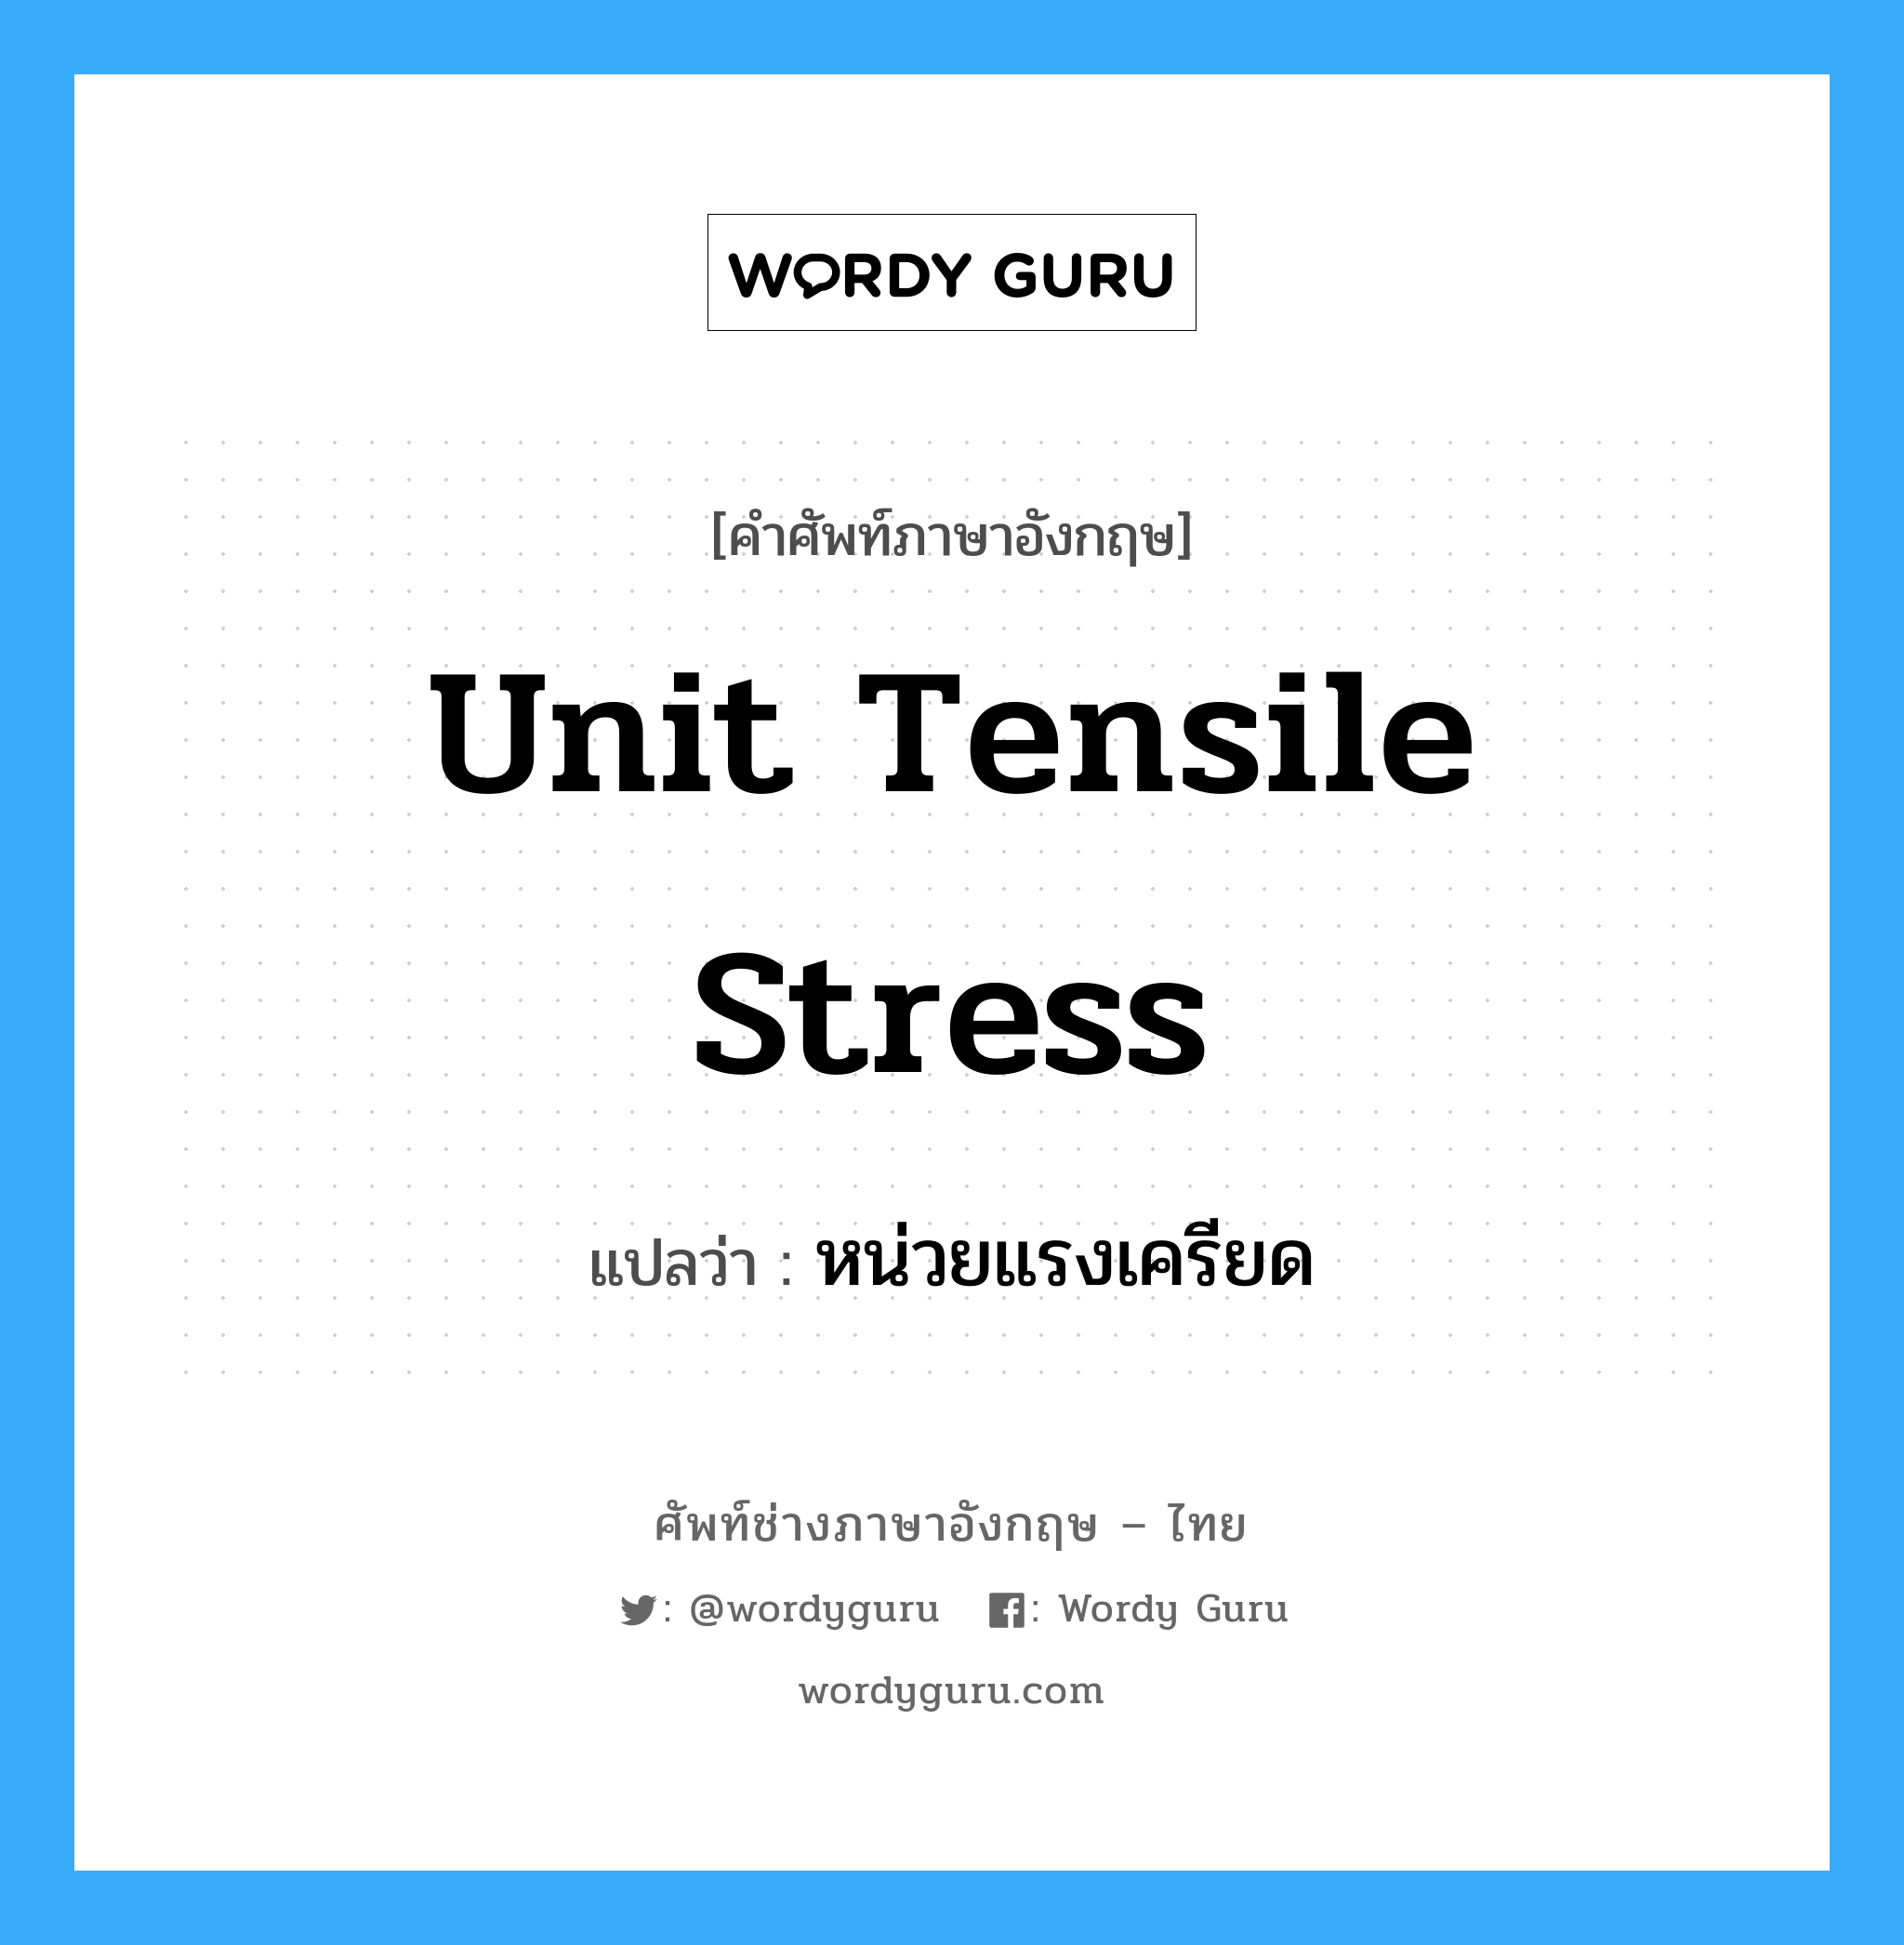 หน่วยแรงเครียด ภาษาอังกฤษ?, คำศัพท์ช่างภาษาอังกฤษ - ไทย หน่วยแรงเครียด คำศัพท์ภาษาอังกฤษ หน่วยแรงเครียด แปลว่า unit tensile stress